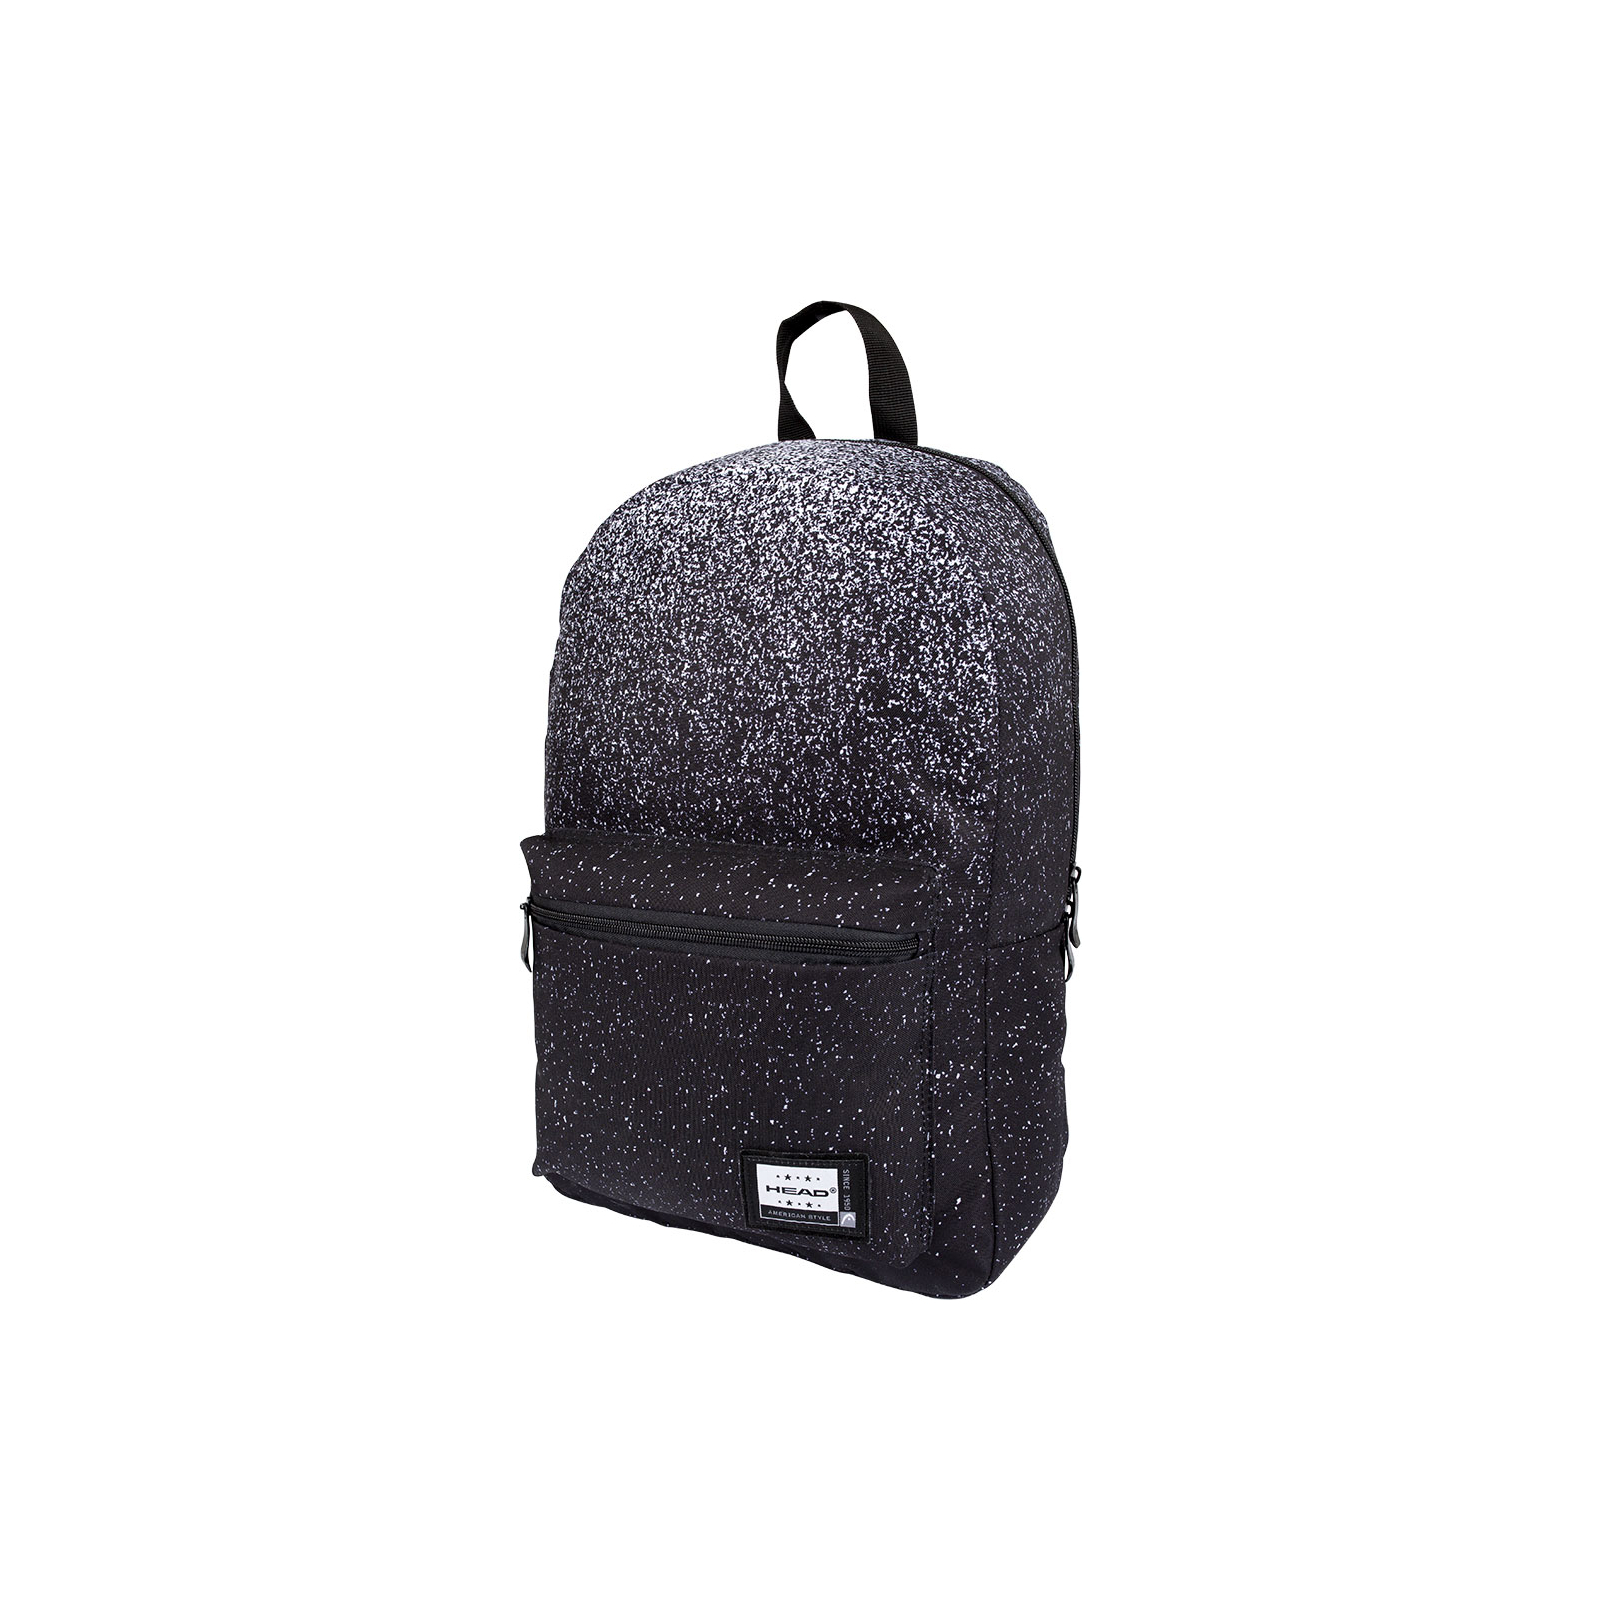 Рюкзак школьный Head AB100 Black Dust (502021119)